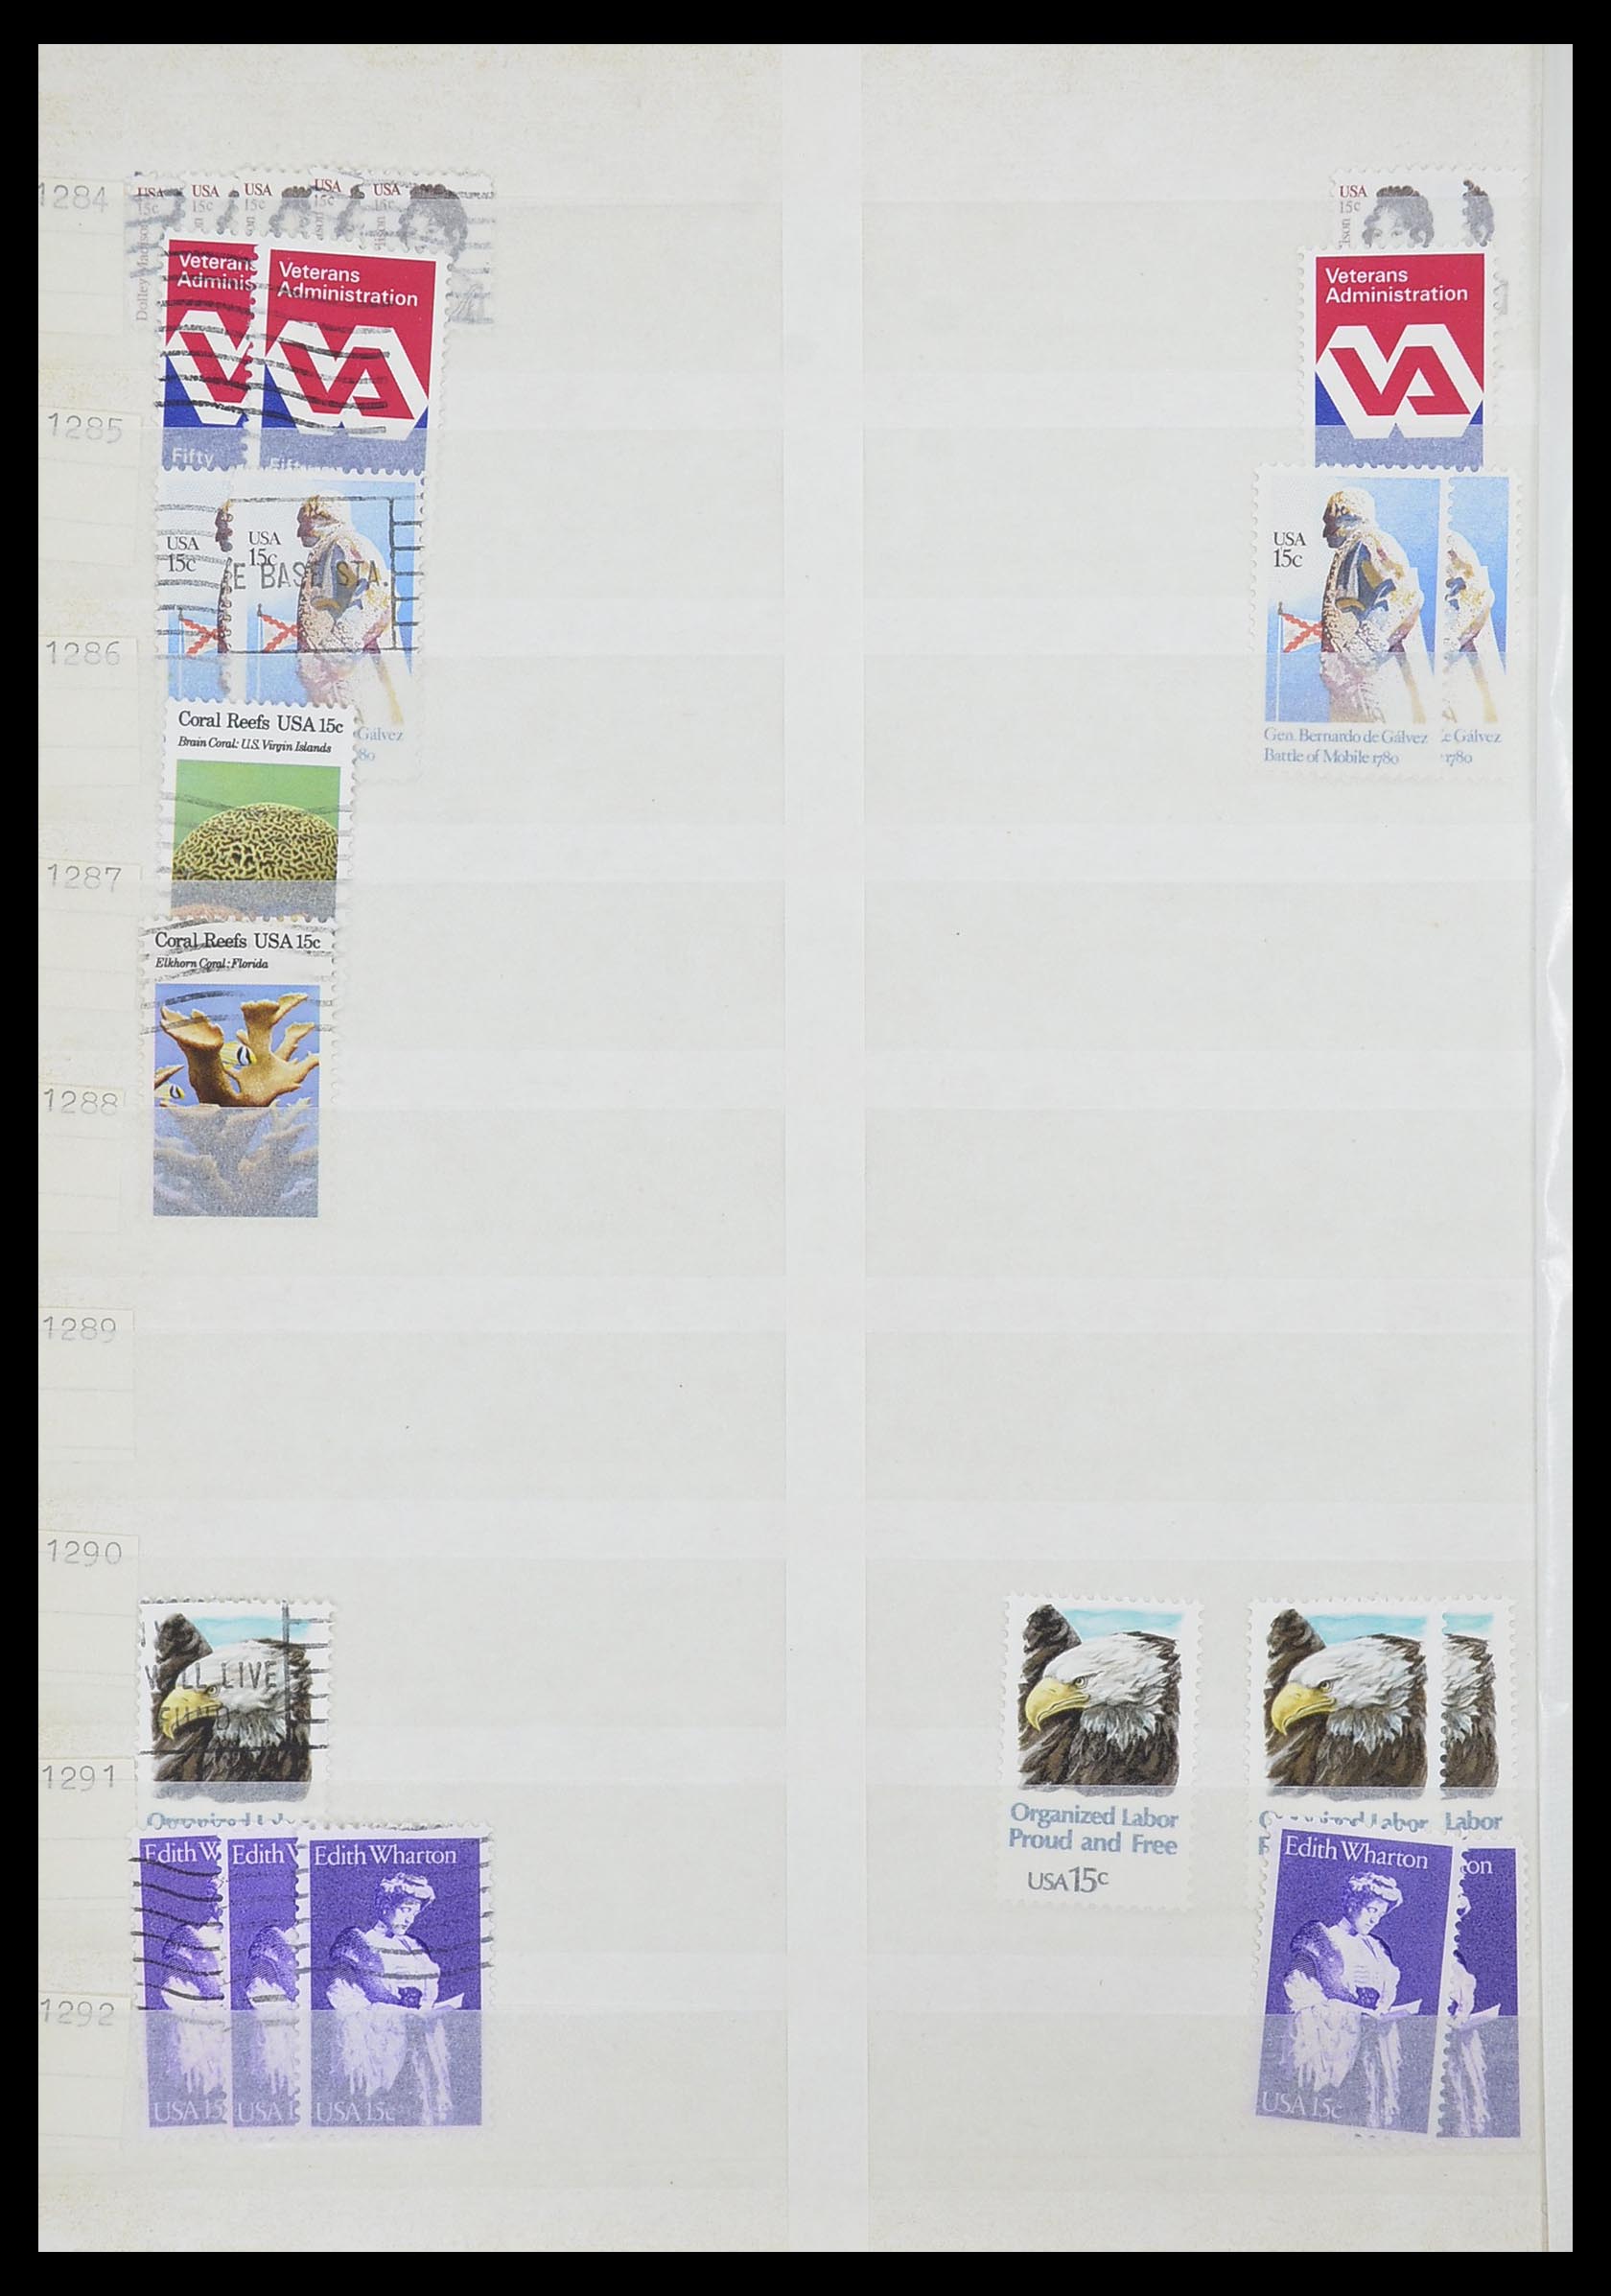 33857 072 - Stamp collection 33857 USA 1959-1988.